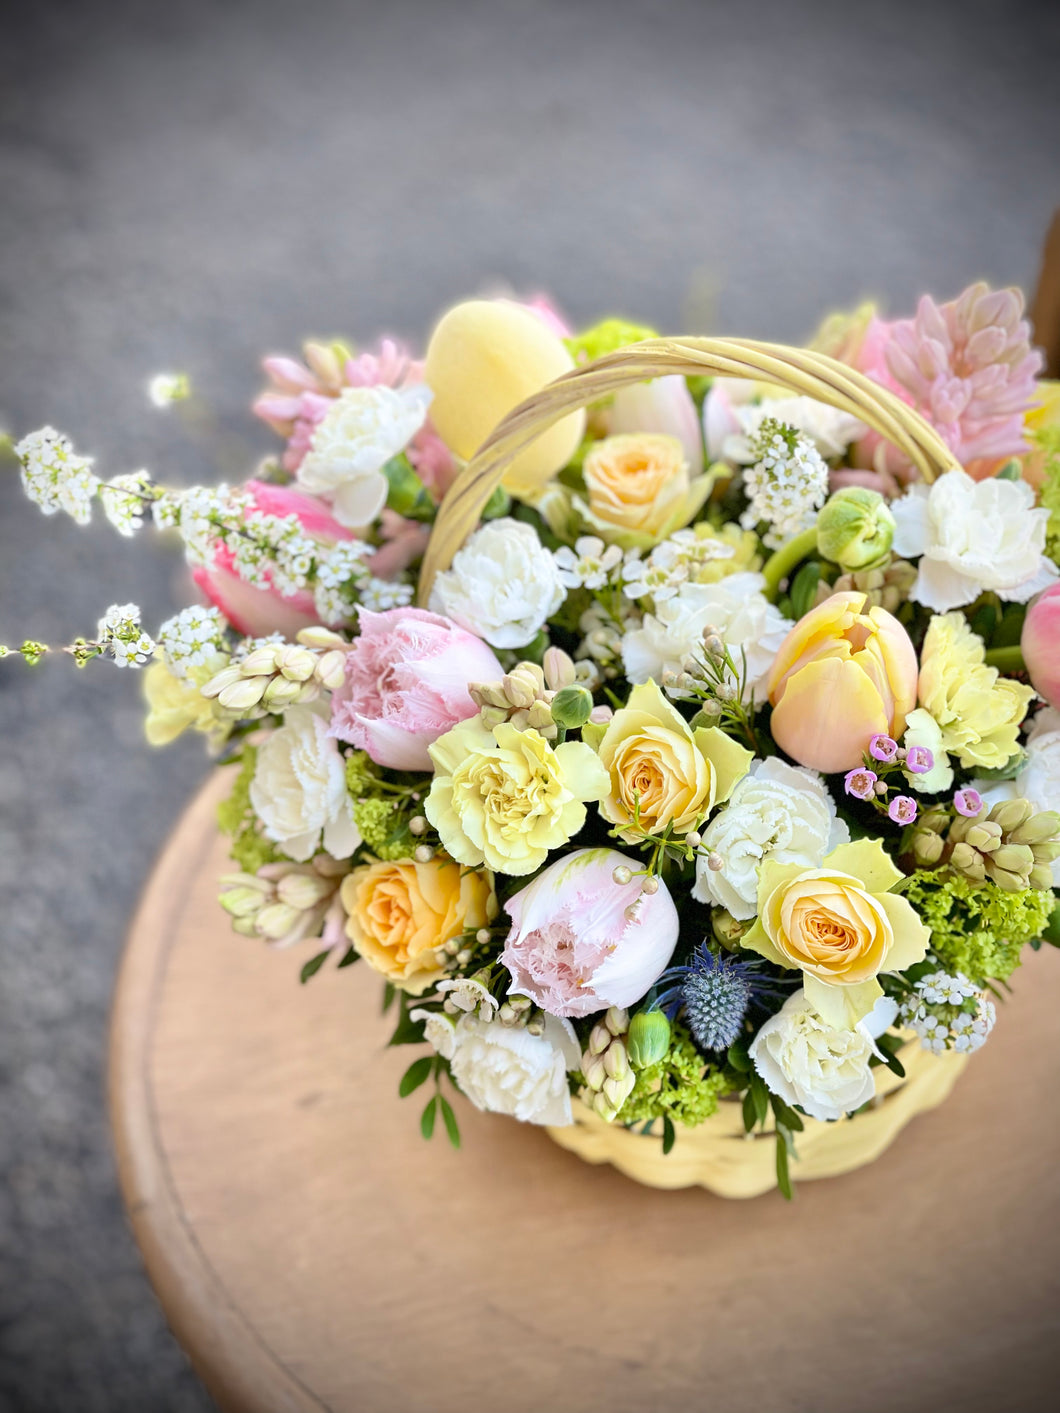 rose, bouquet, vase, flower, plant, cut flowers, flower arranging, floral design